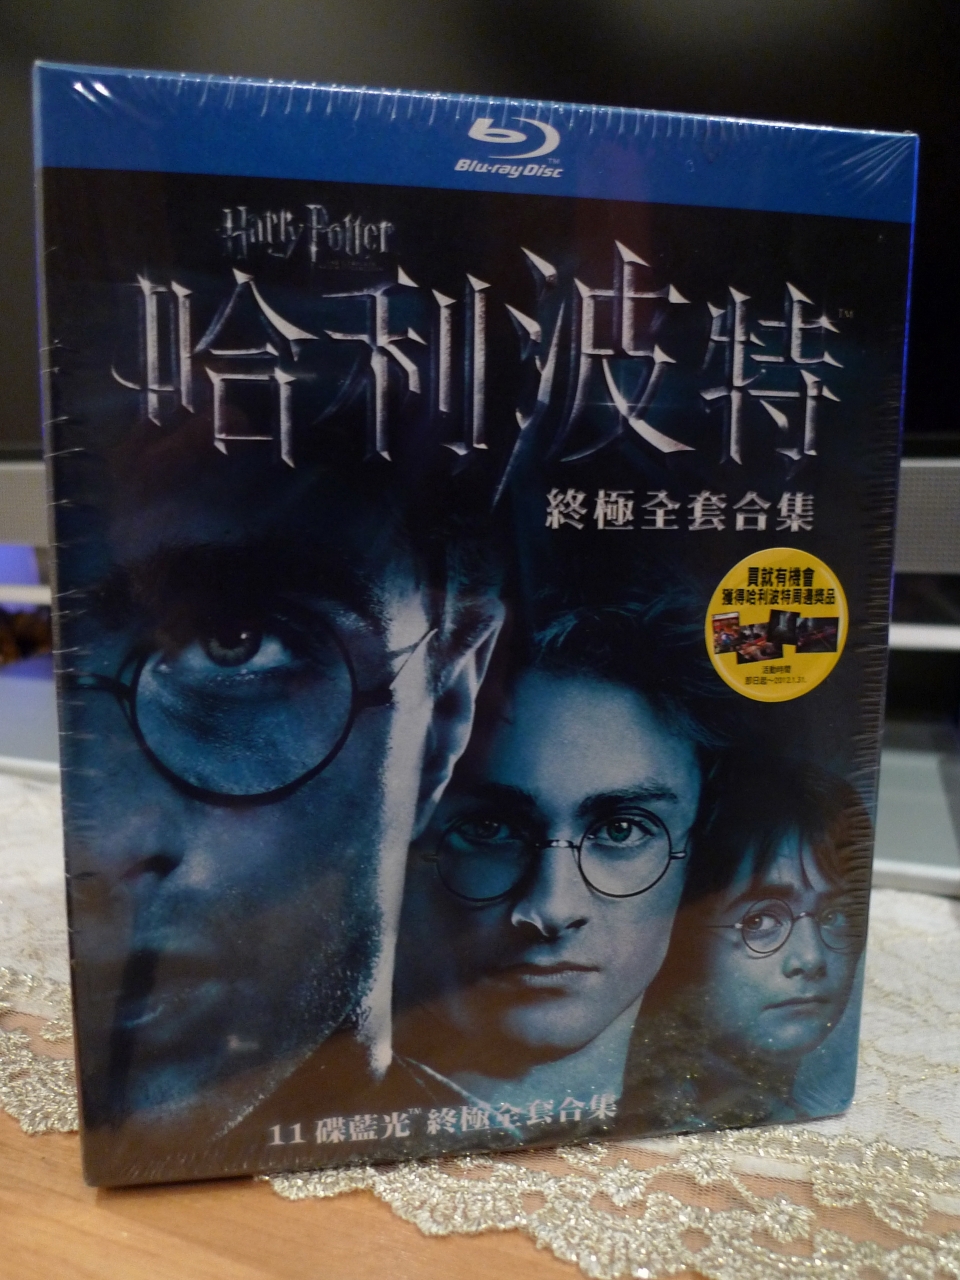 哈利波特1-7終極全套合集 Harry Potter 11碟BD限量典藏版